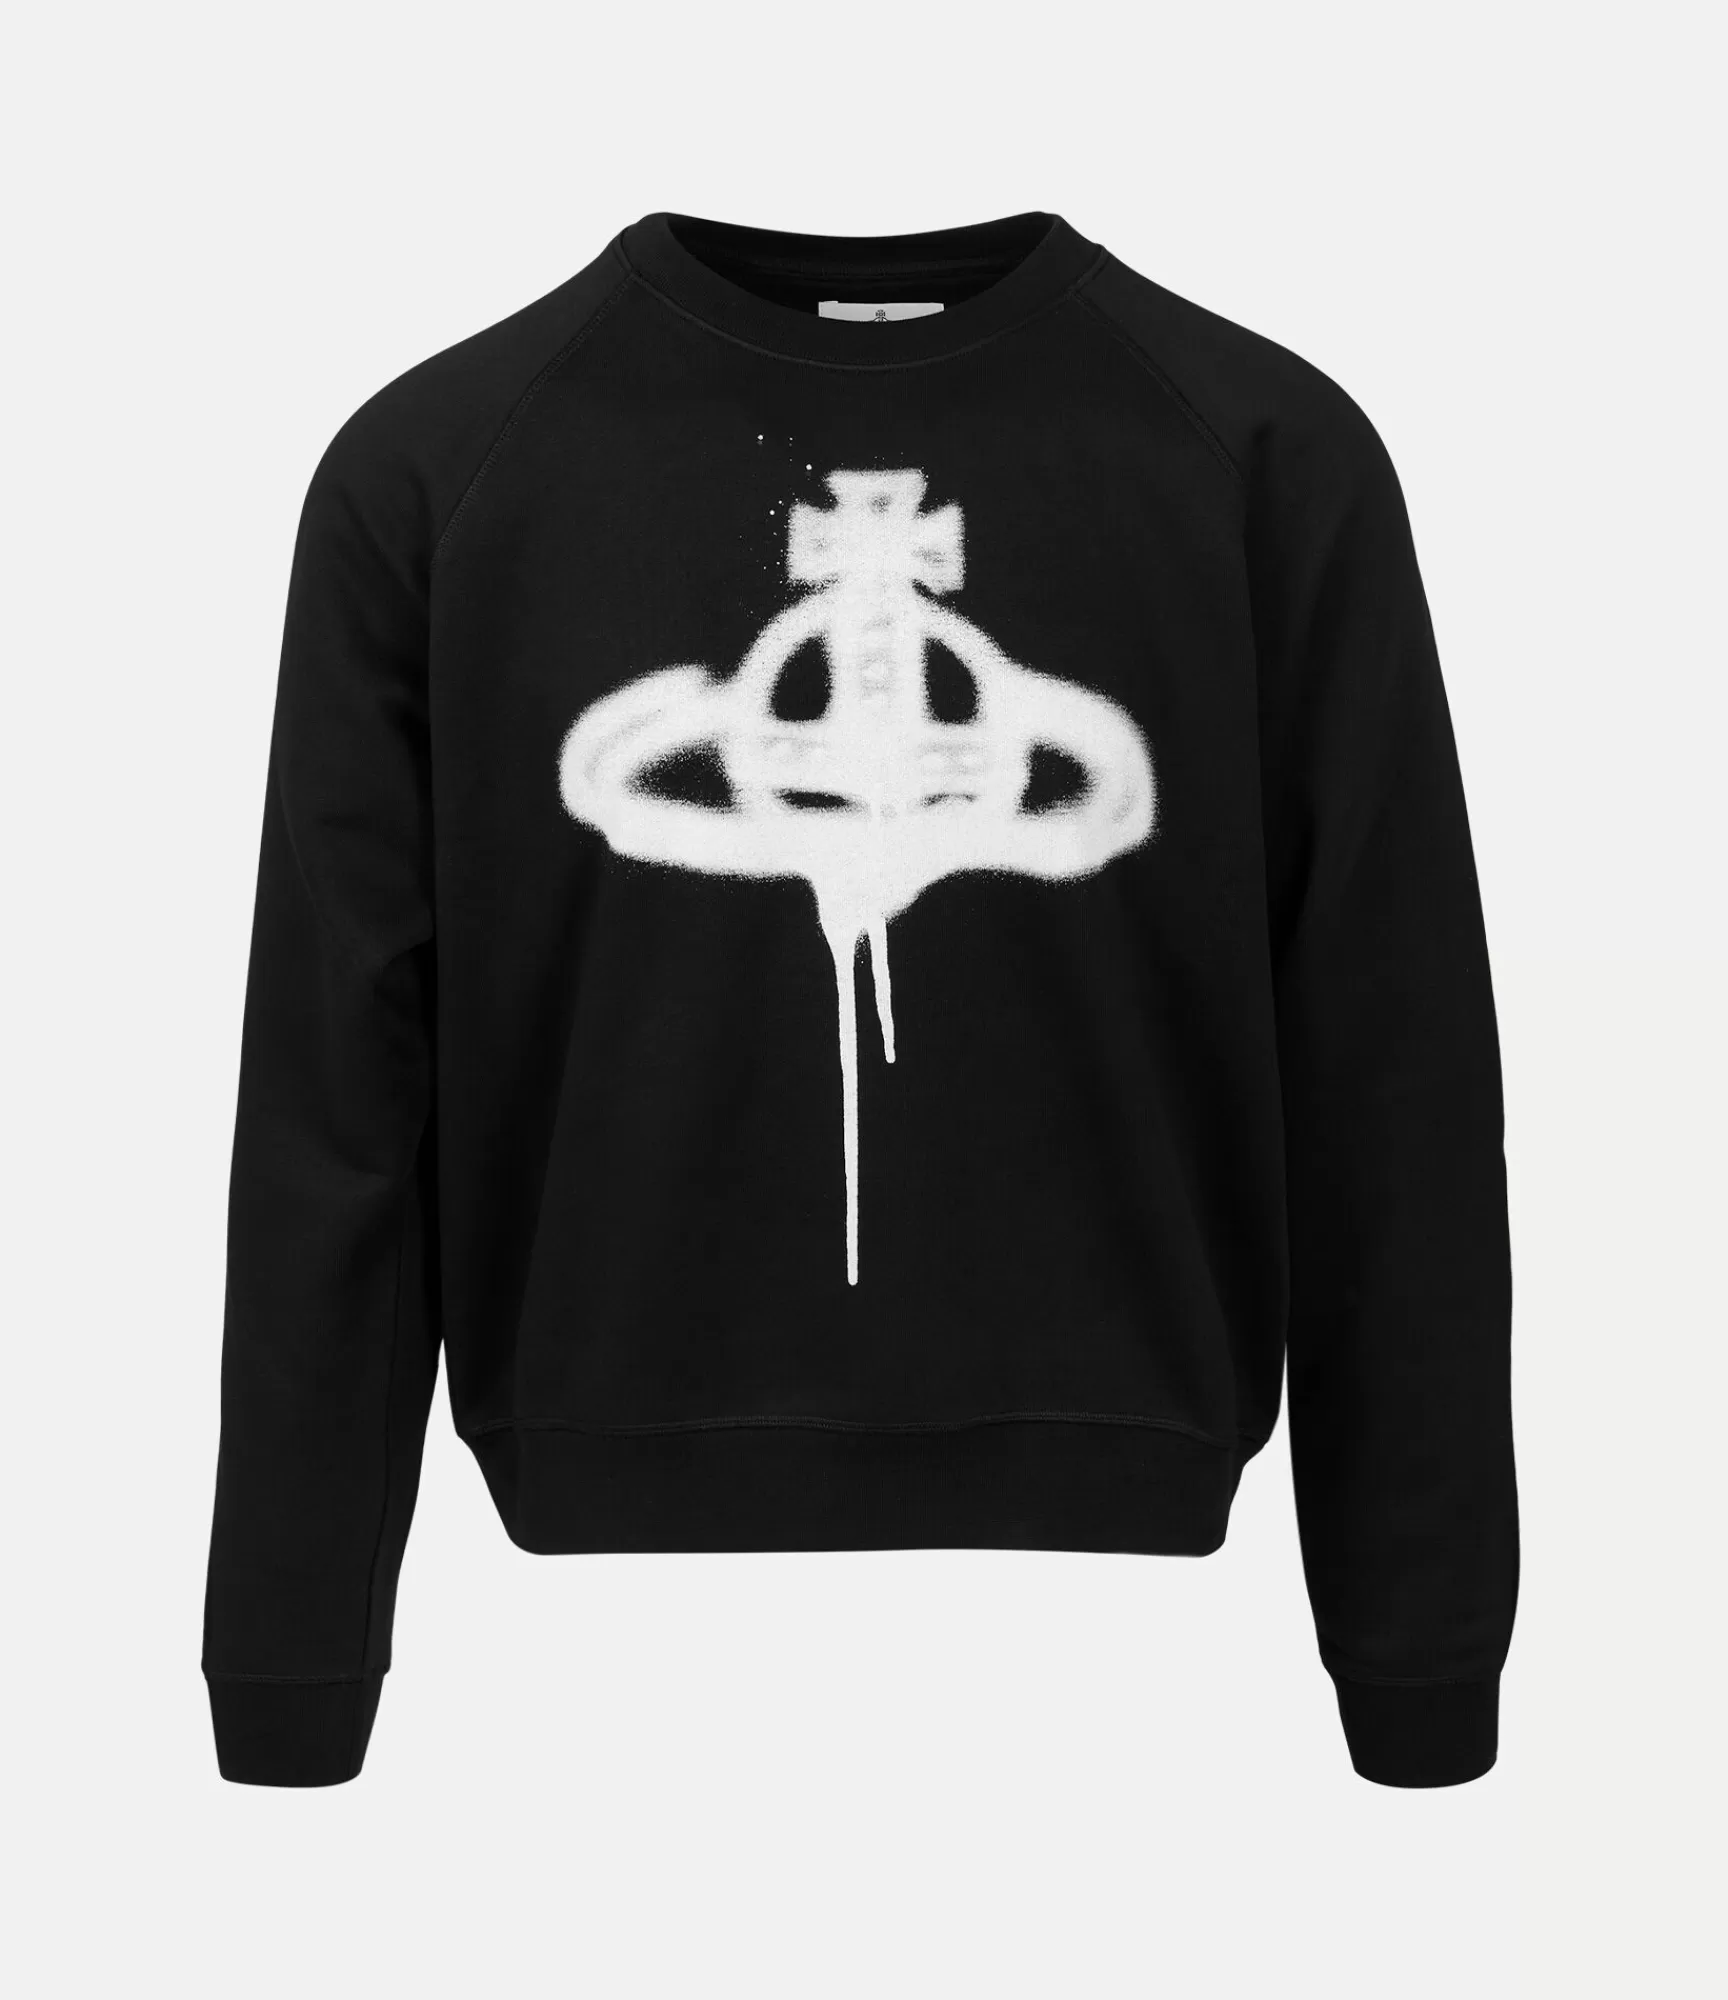 Vivienne Westwood Knitwear and Sweatshirts*Spray orb raglan sweatshirt Black